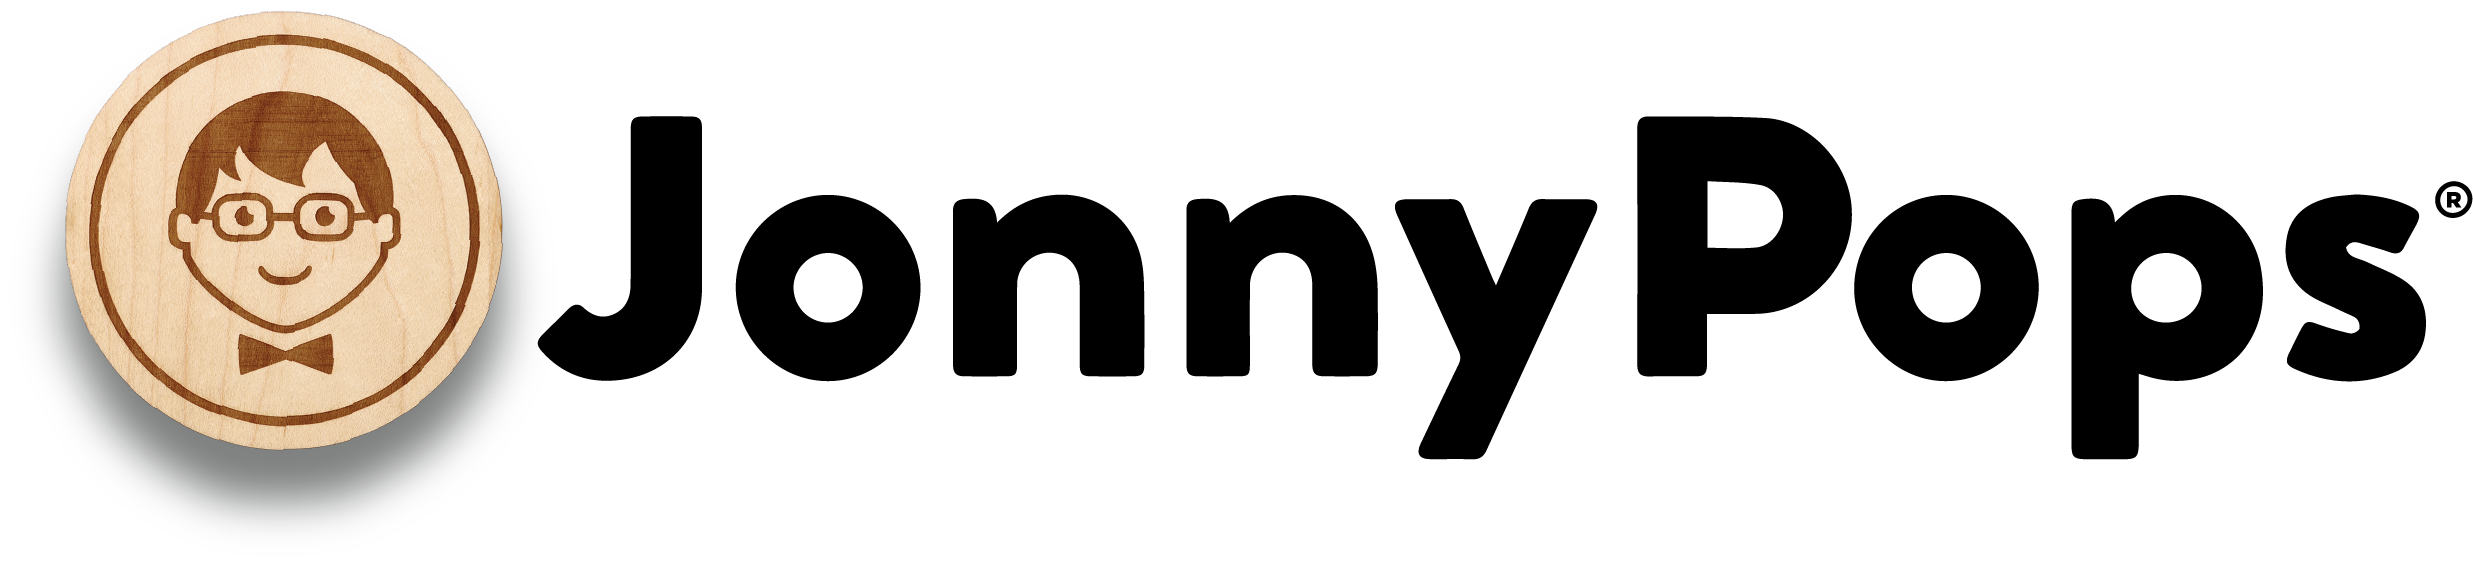 JonnyPops Logo.png